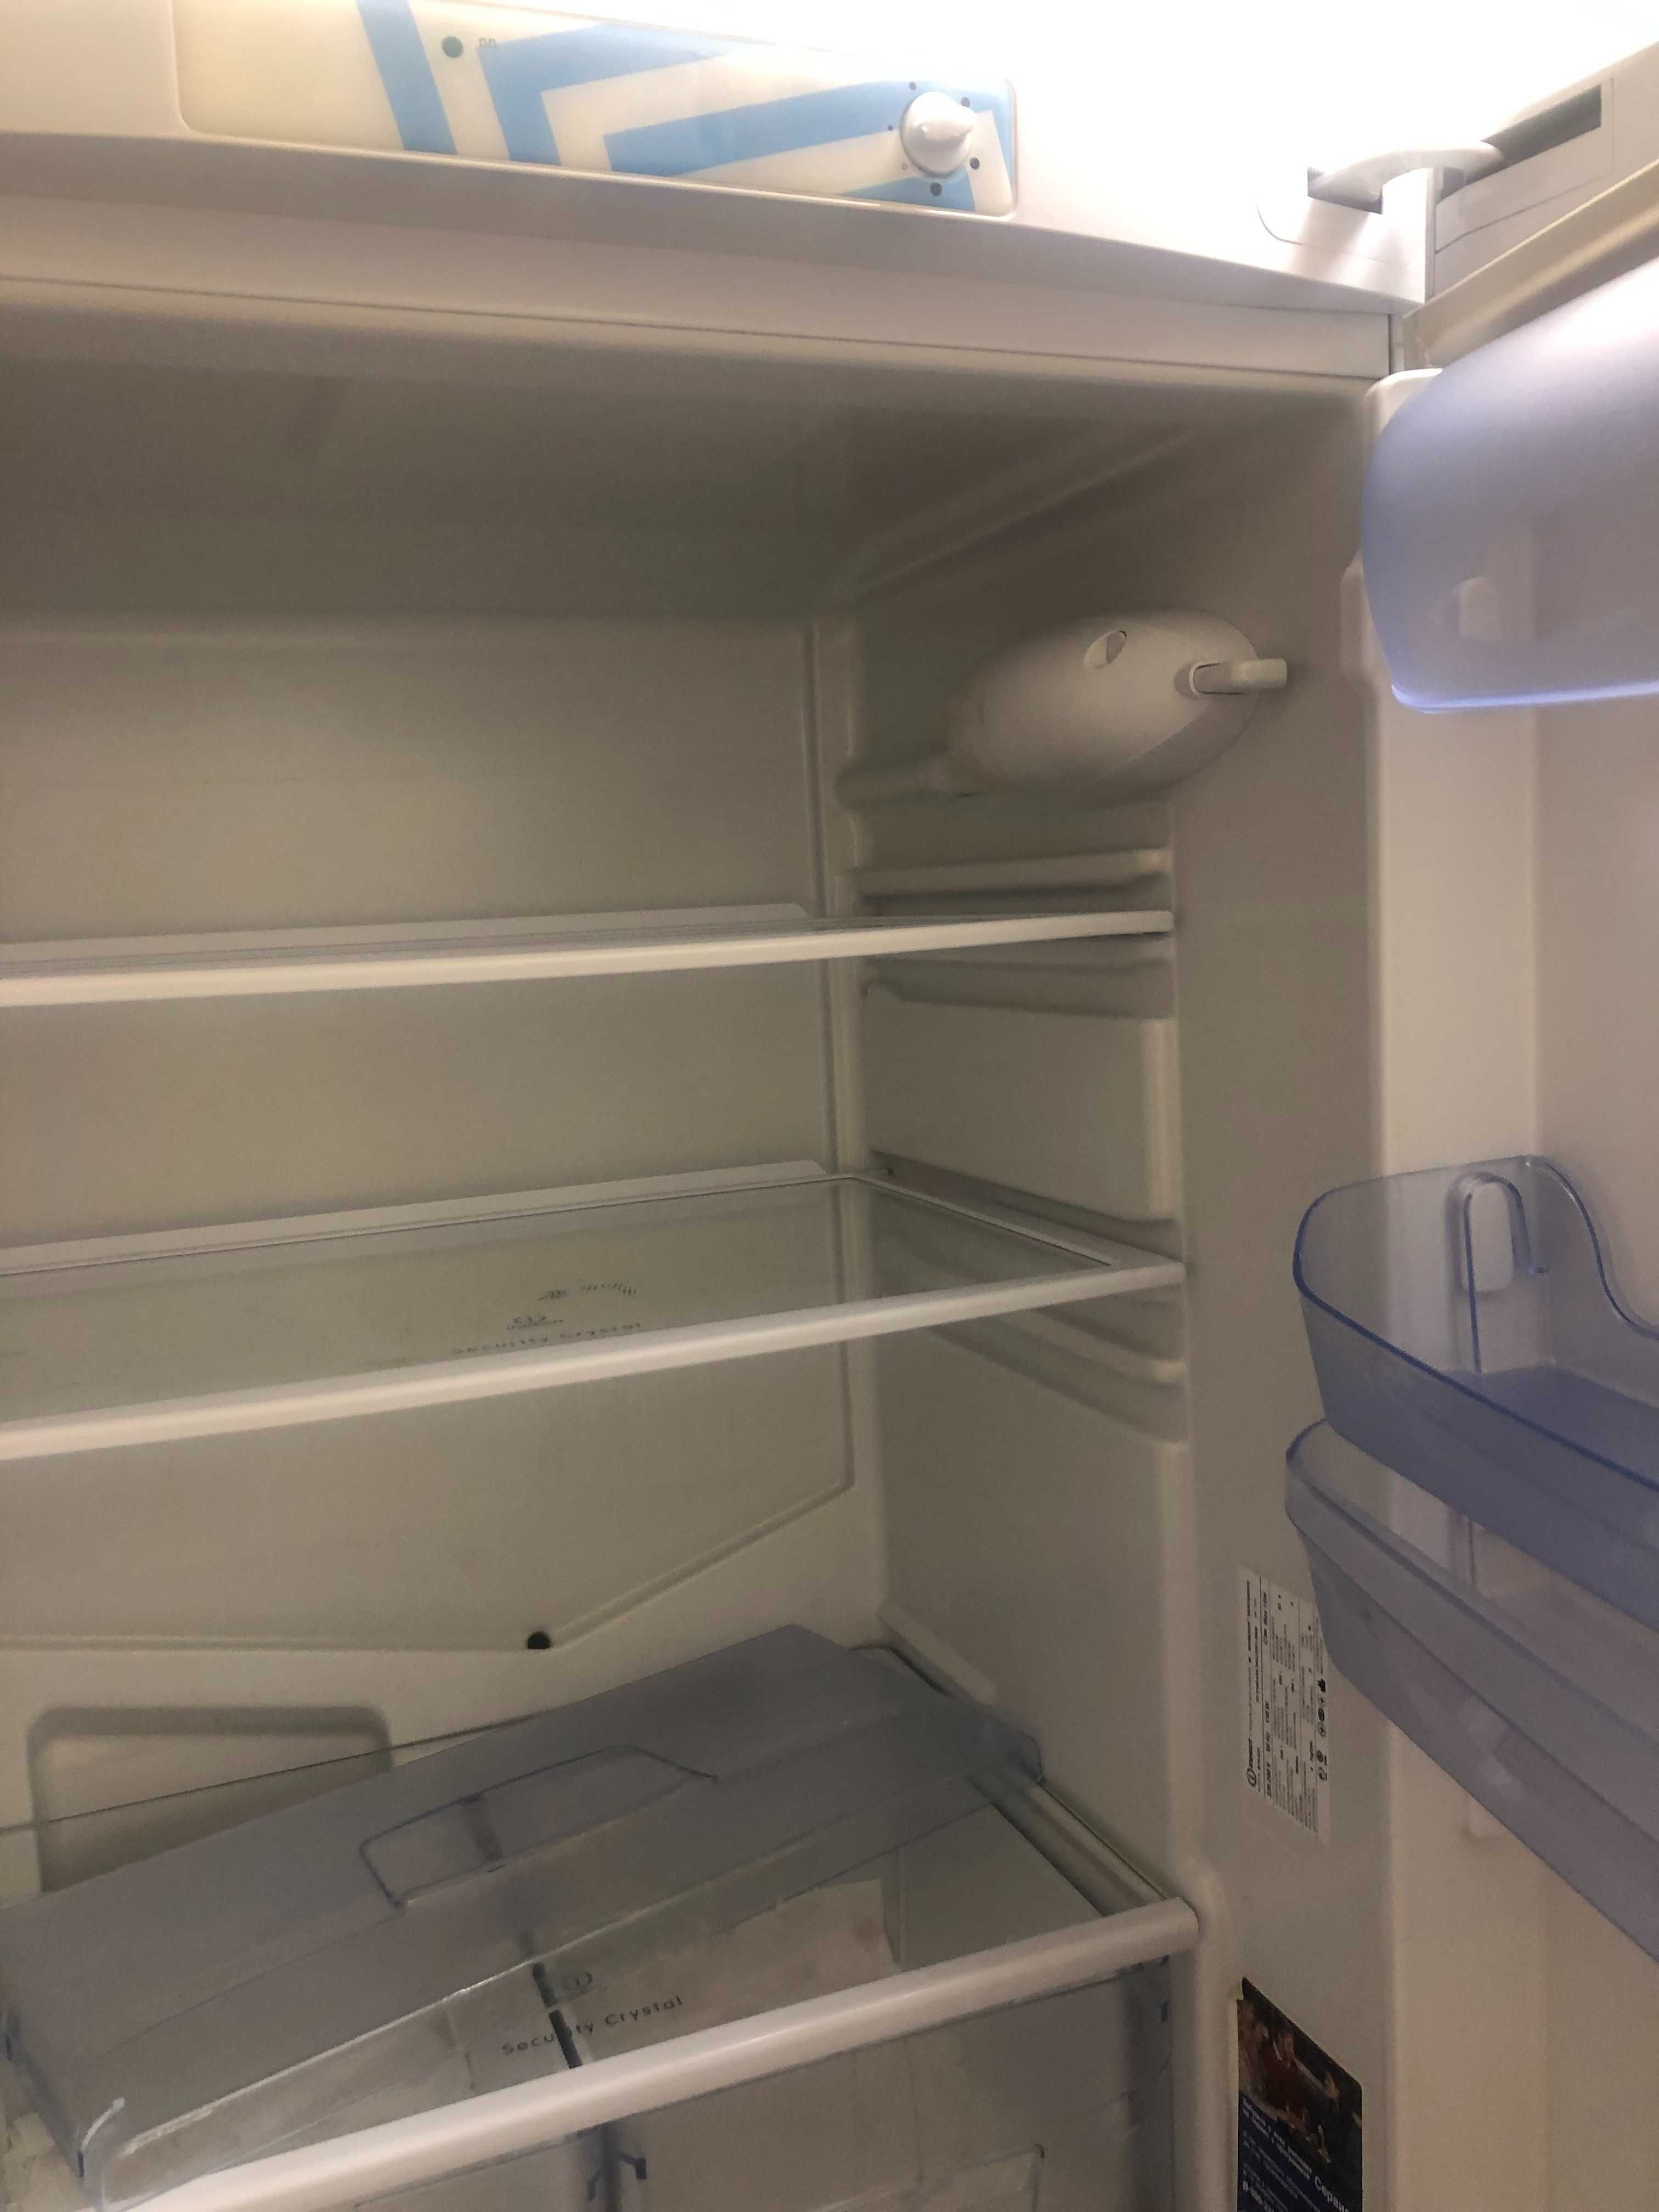 Холодильник Индезит, требующий ремонта или на запчасти